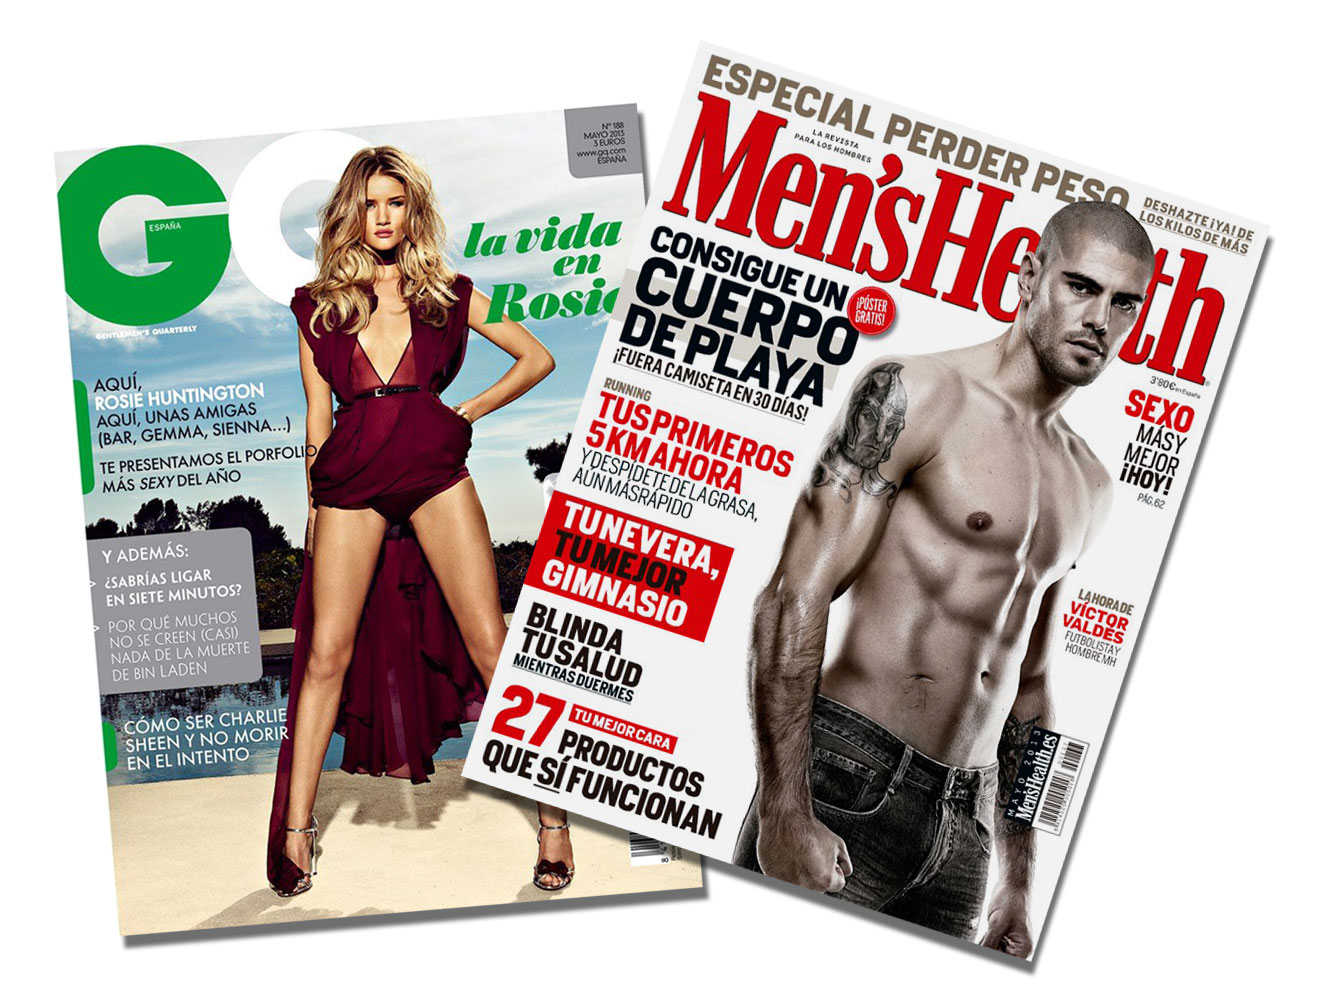 Mens-Health-GQ-May-2013